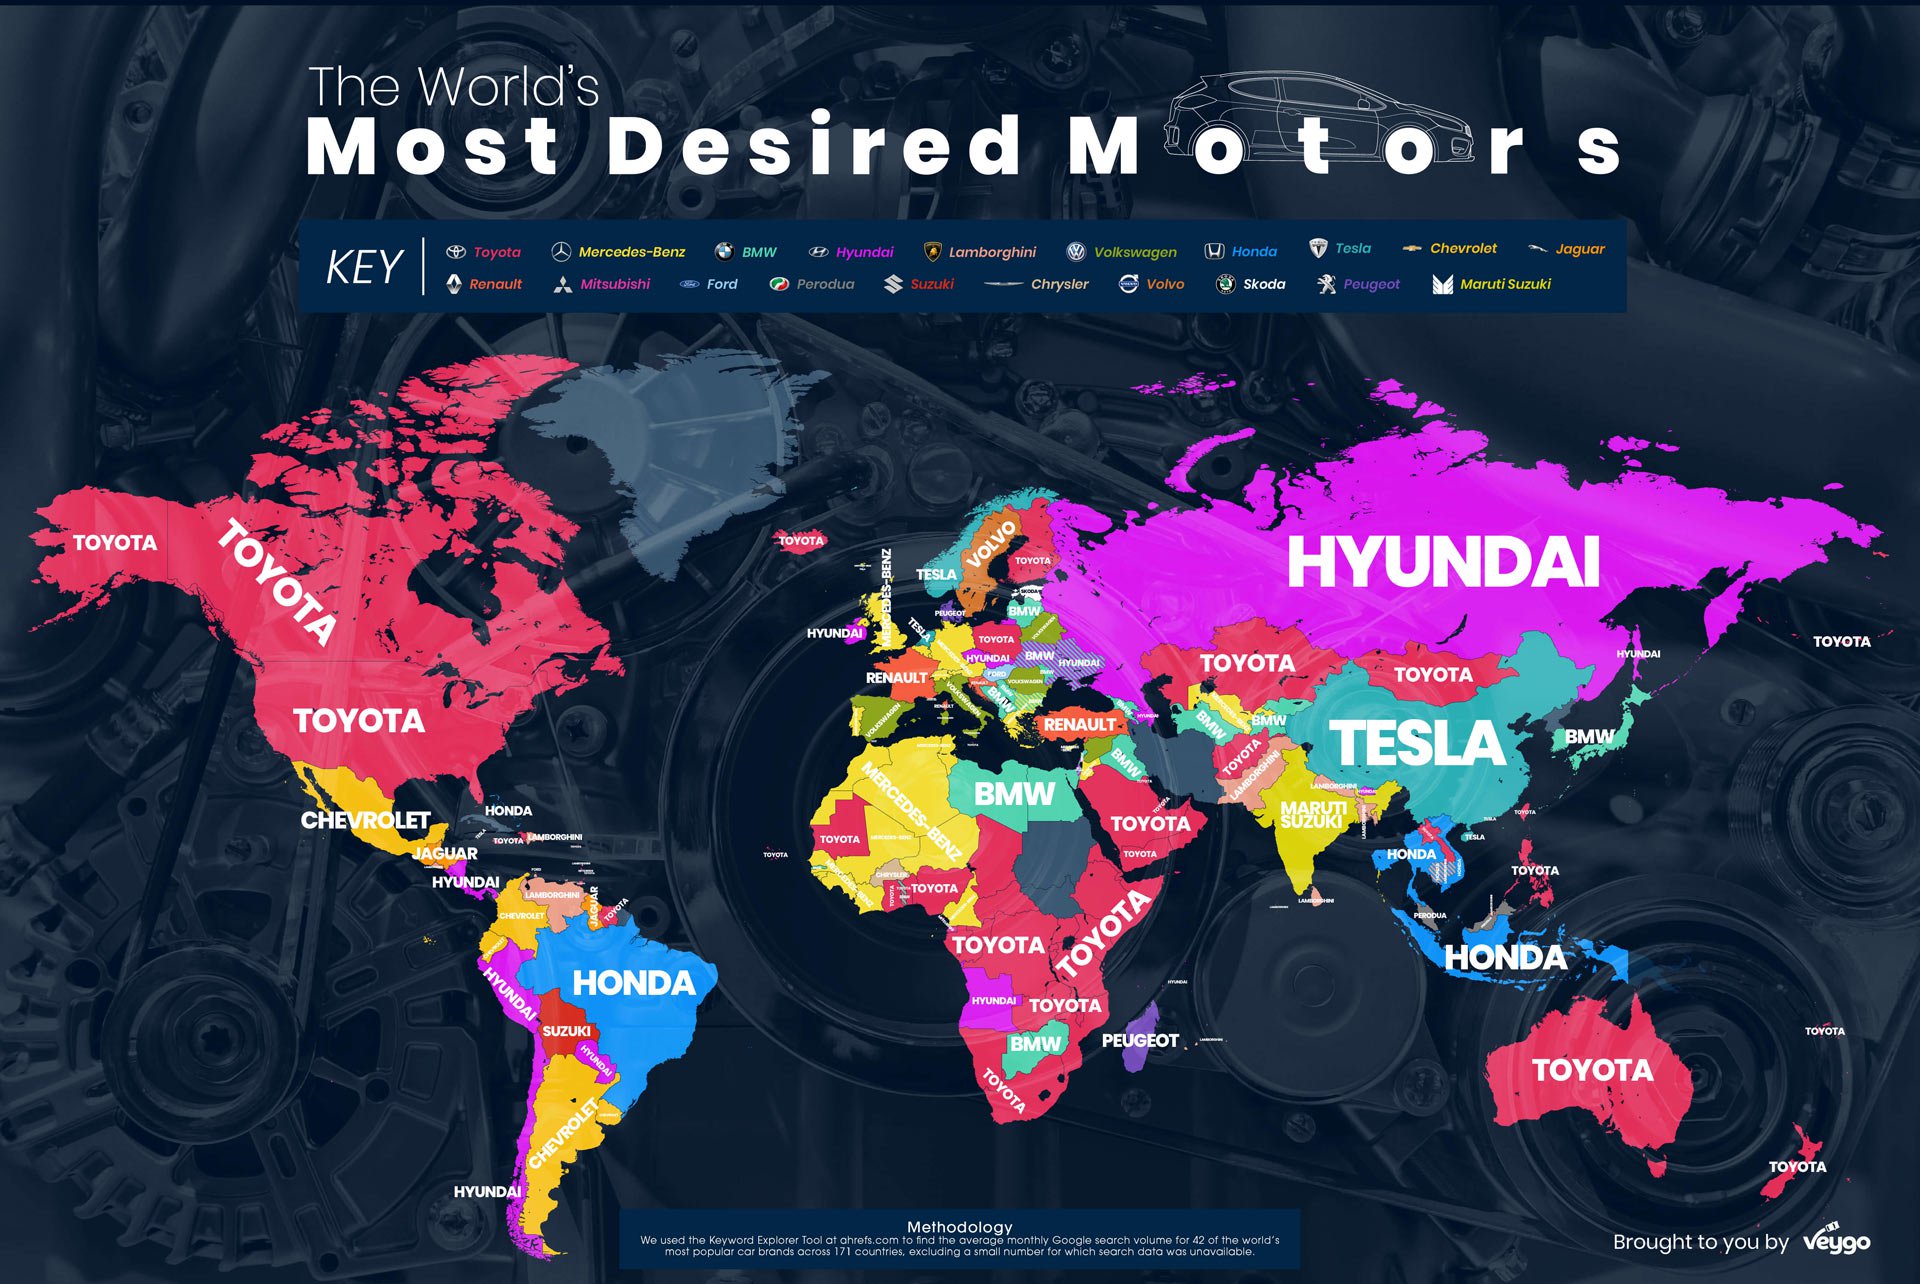 Acura, Merk Paling dicari di Google Veygo: Toyota Menjadi Merk Paling Dicari di Google Global, Honda di Indonesia